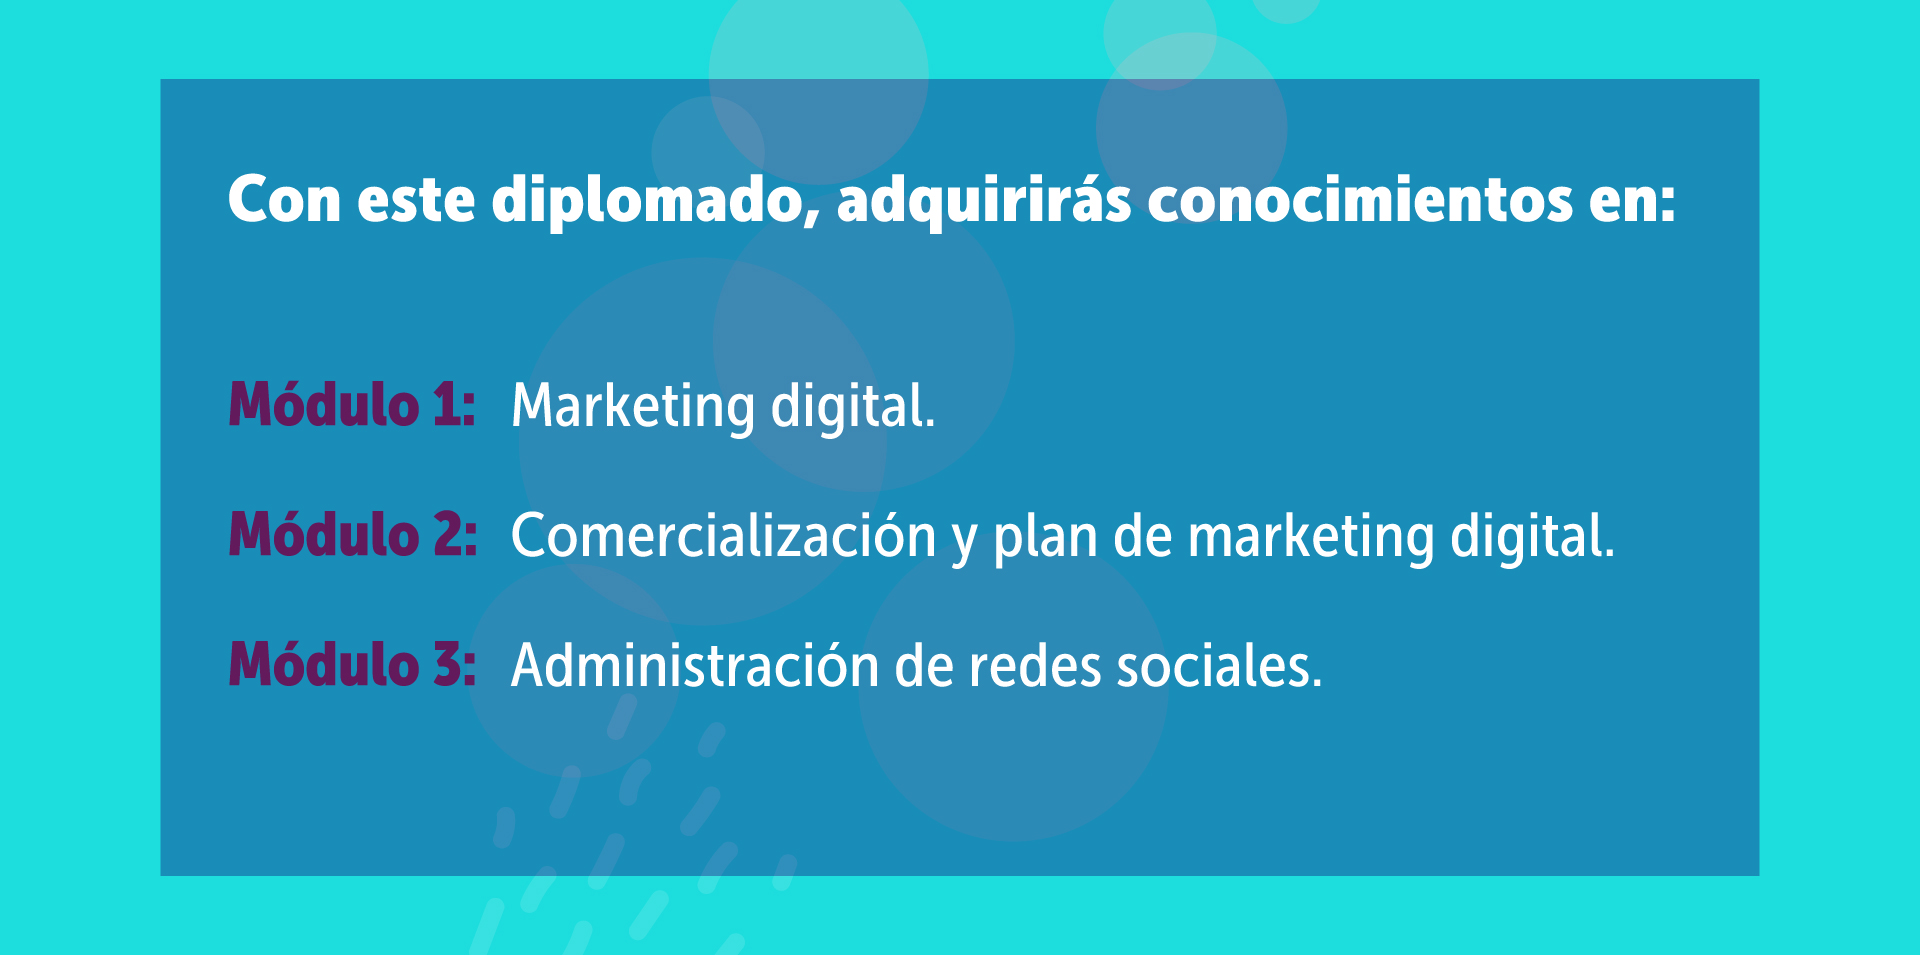 Con este diplomado, adquirirás conocimientos en: Marketing digital, Comercialización y plan de marketing digital, Administración de redes sociales.